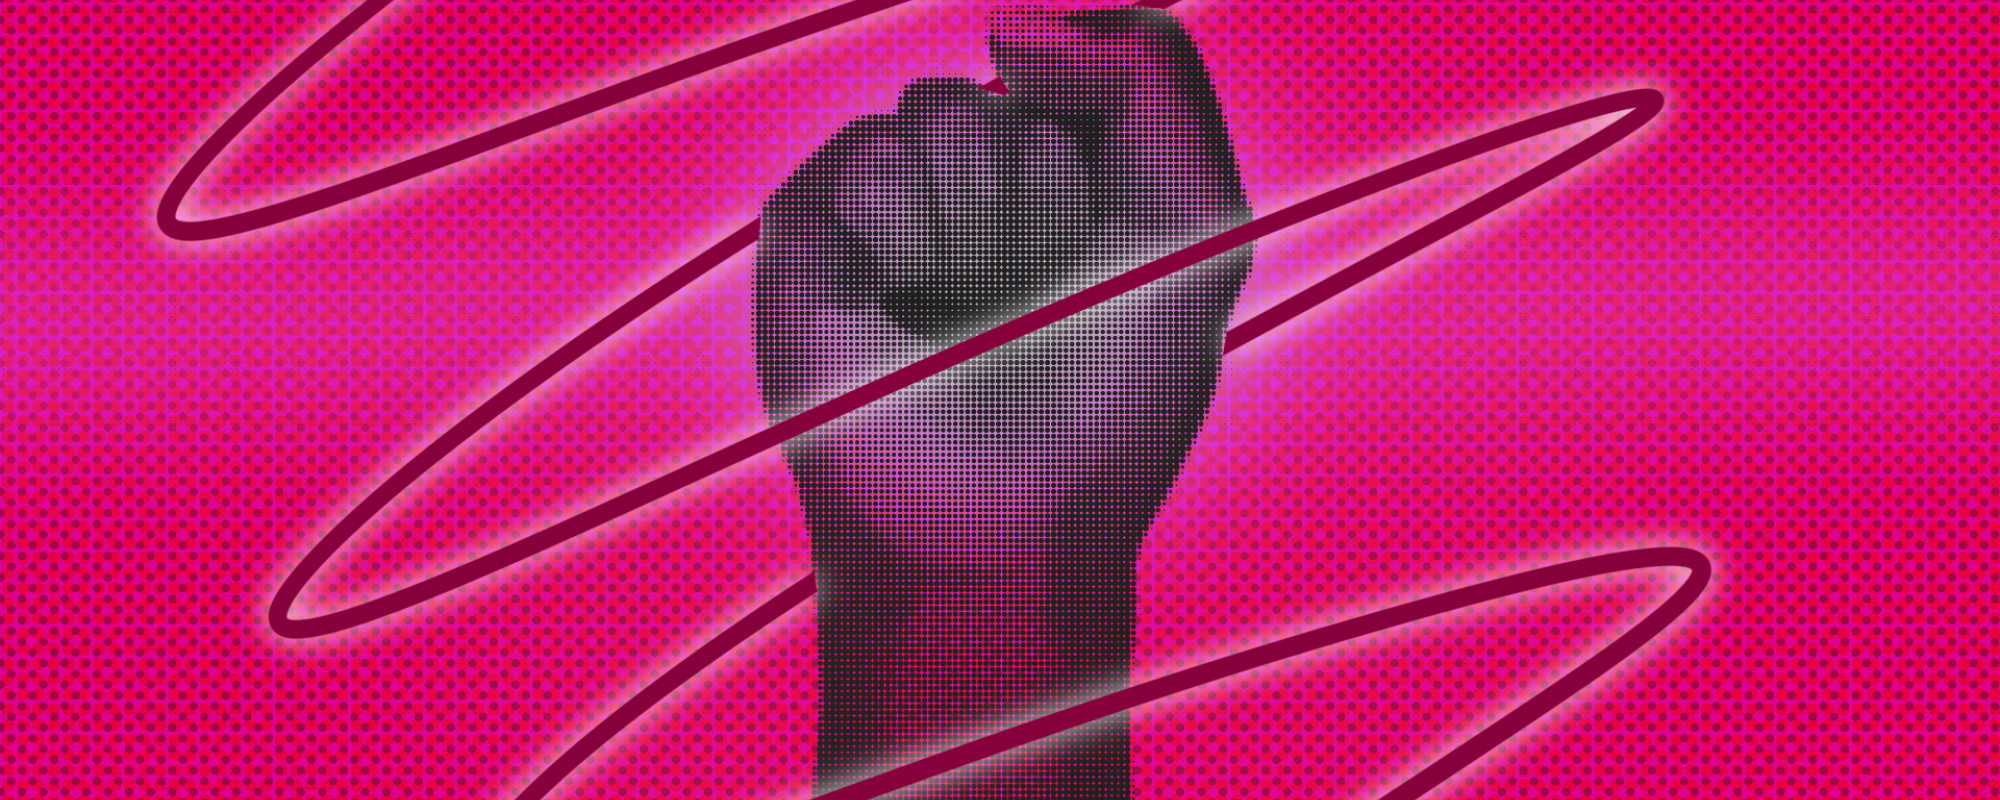 Image of a raised fist